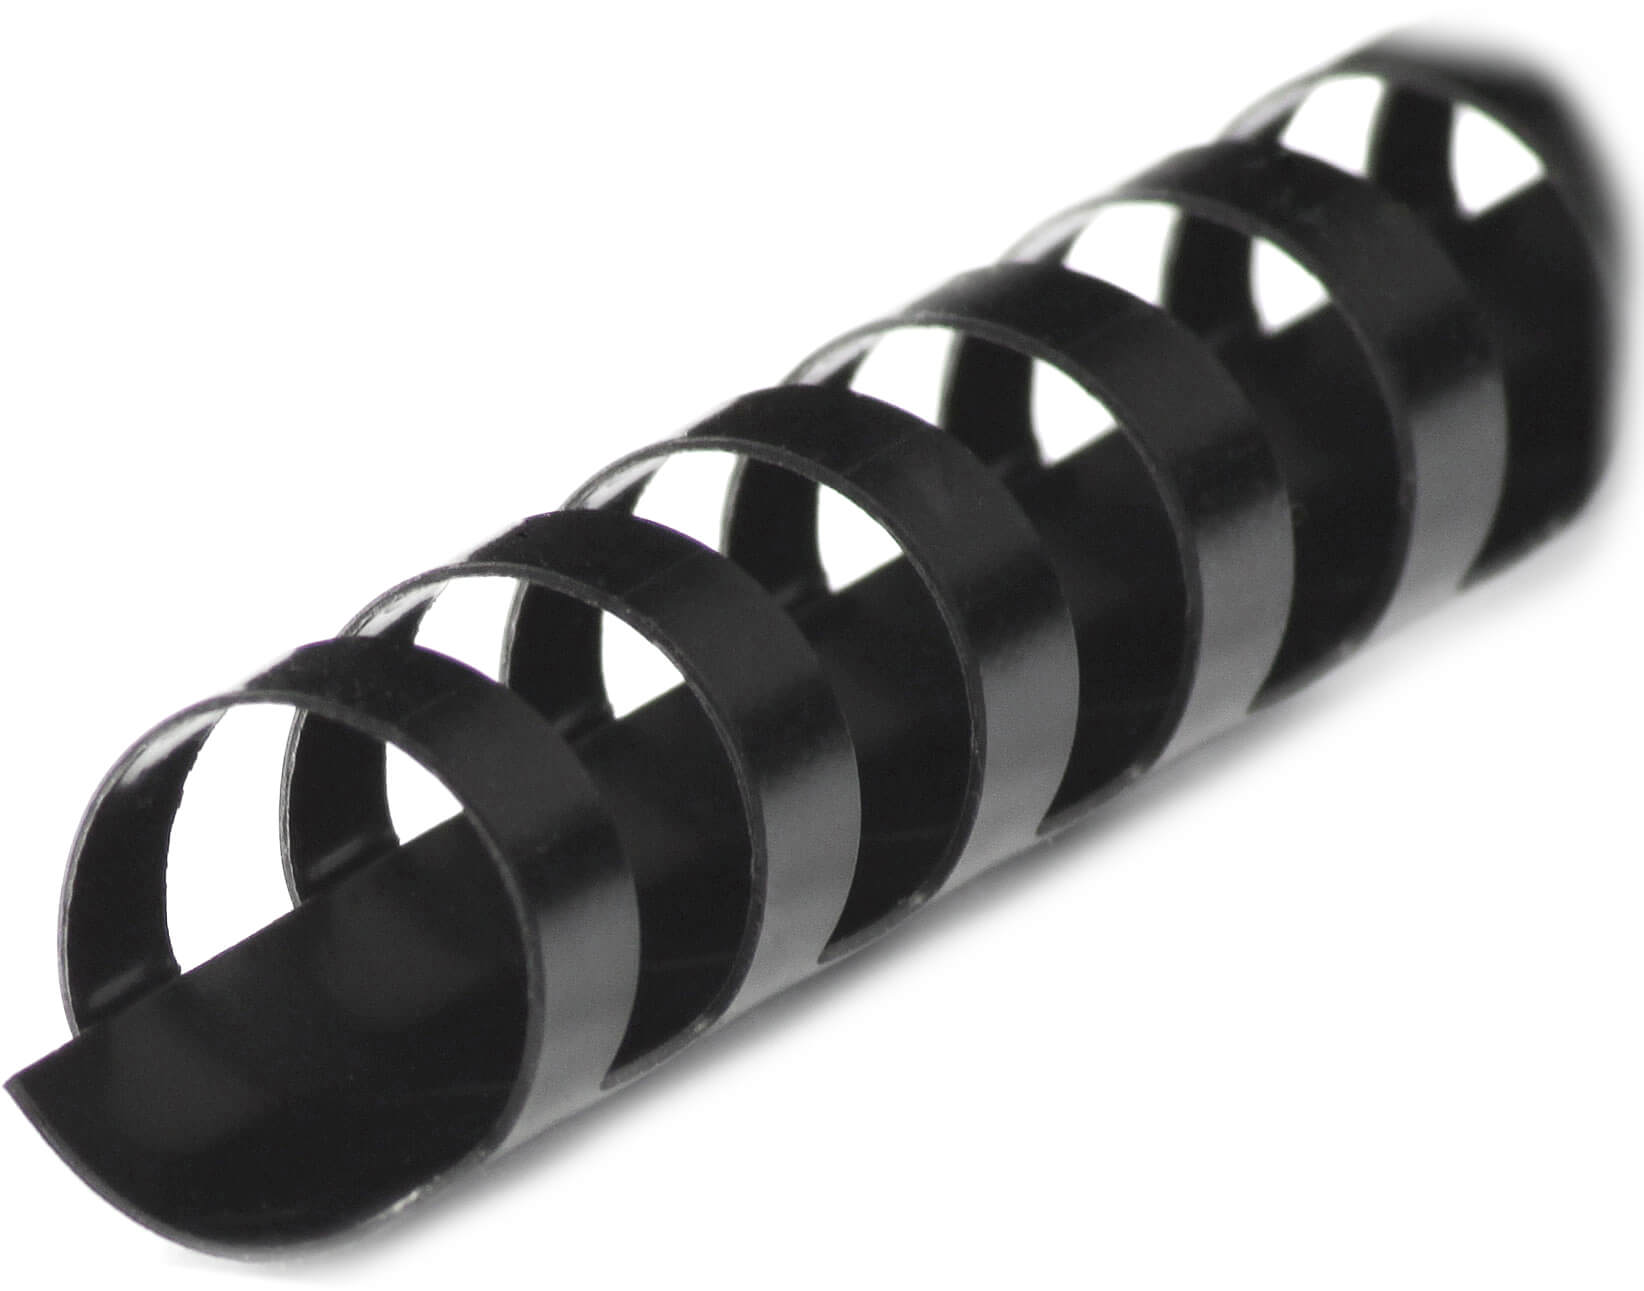 Plastikbinderücken 21 Ringe DIN A4 16mm in schwarz | Bestnr. BRP160-SW